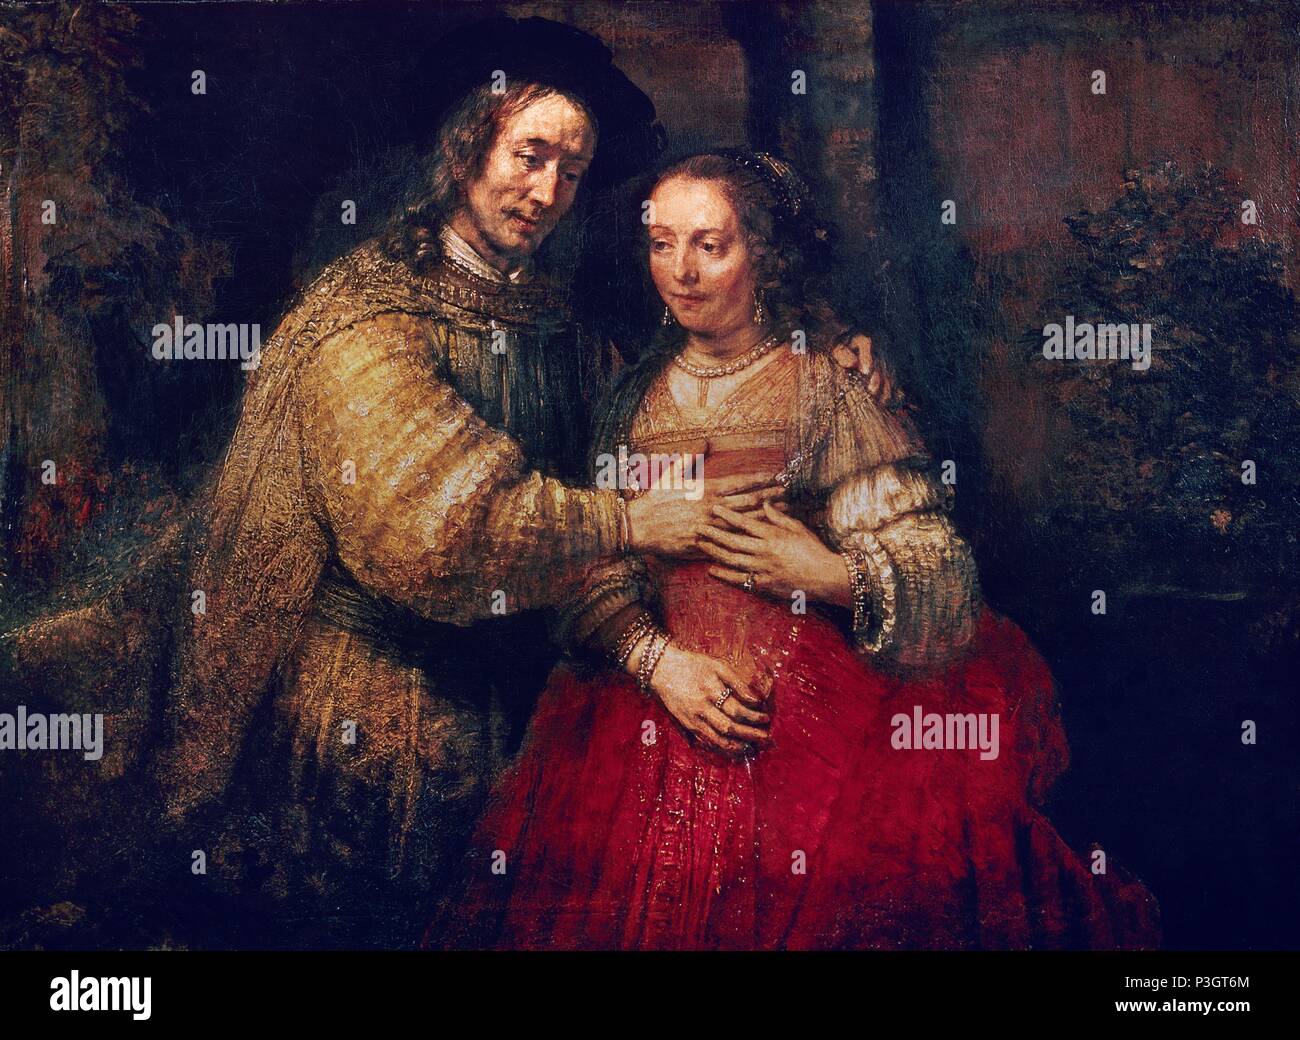 Escuela Holandesa. La novia judía. 1667. Óleo sobre lienzo (121,5 x 166,5 cm). Ámsterdam, Rijksmuseum. Autor: Rembrandt (1606-1669). Ubicación: Rijksmuseum, Amsterdam, Holanda. Foto de stock